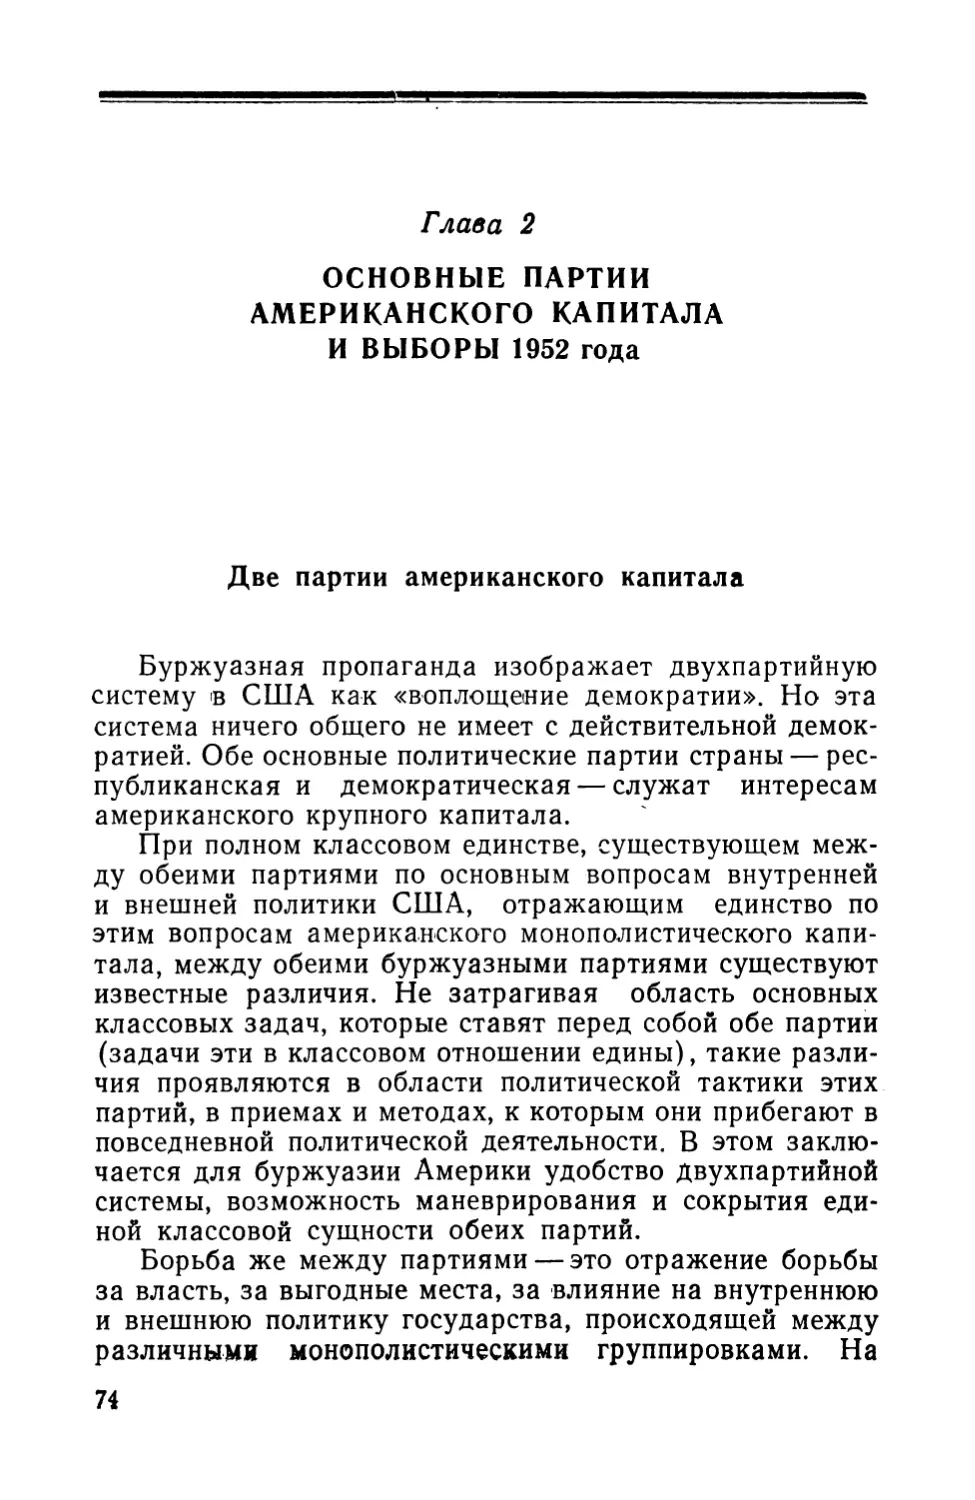 Глава 2. ОСНОВНЫЕ ПАРТИИ АМЕРИКАНСКОГО КАПИТАЛА И ВЫБОРЫ 1952 года